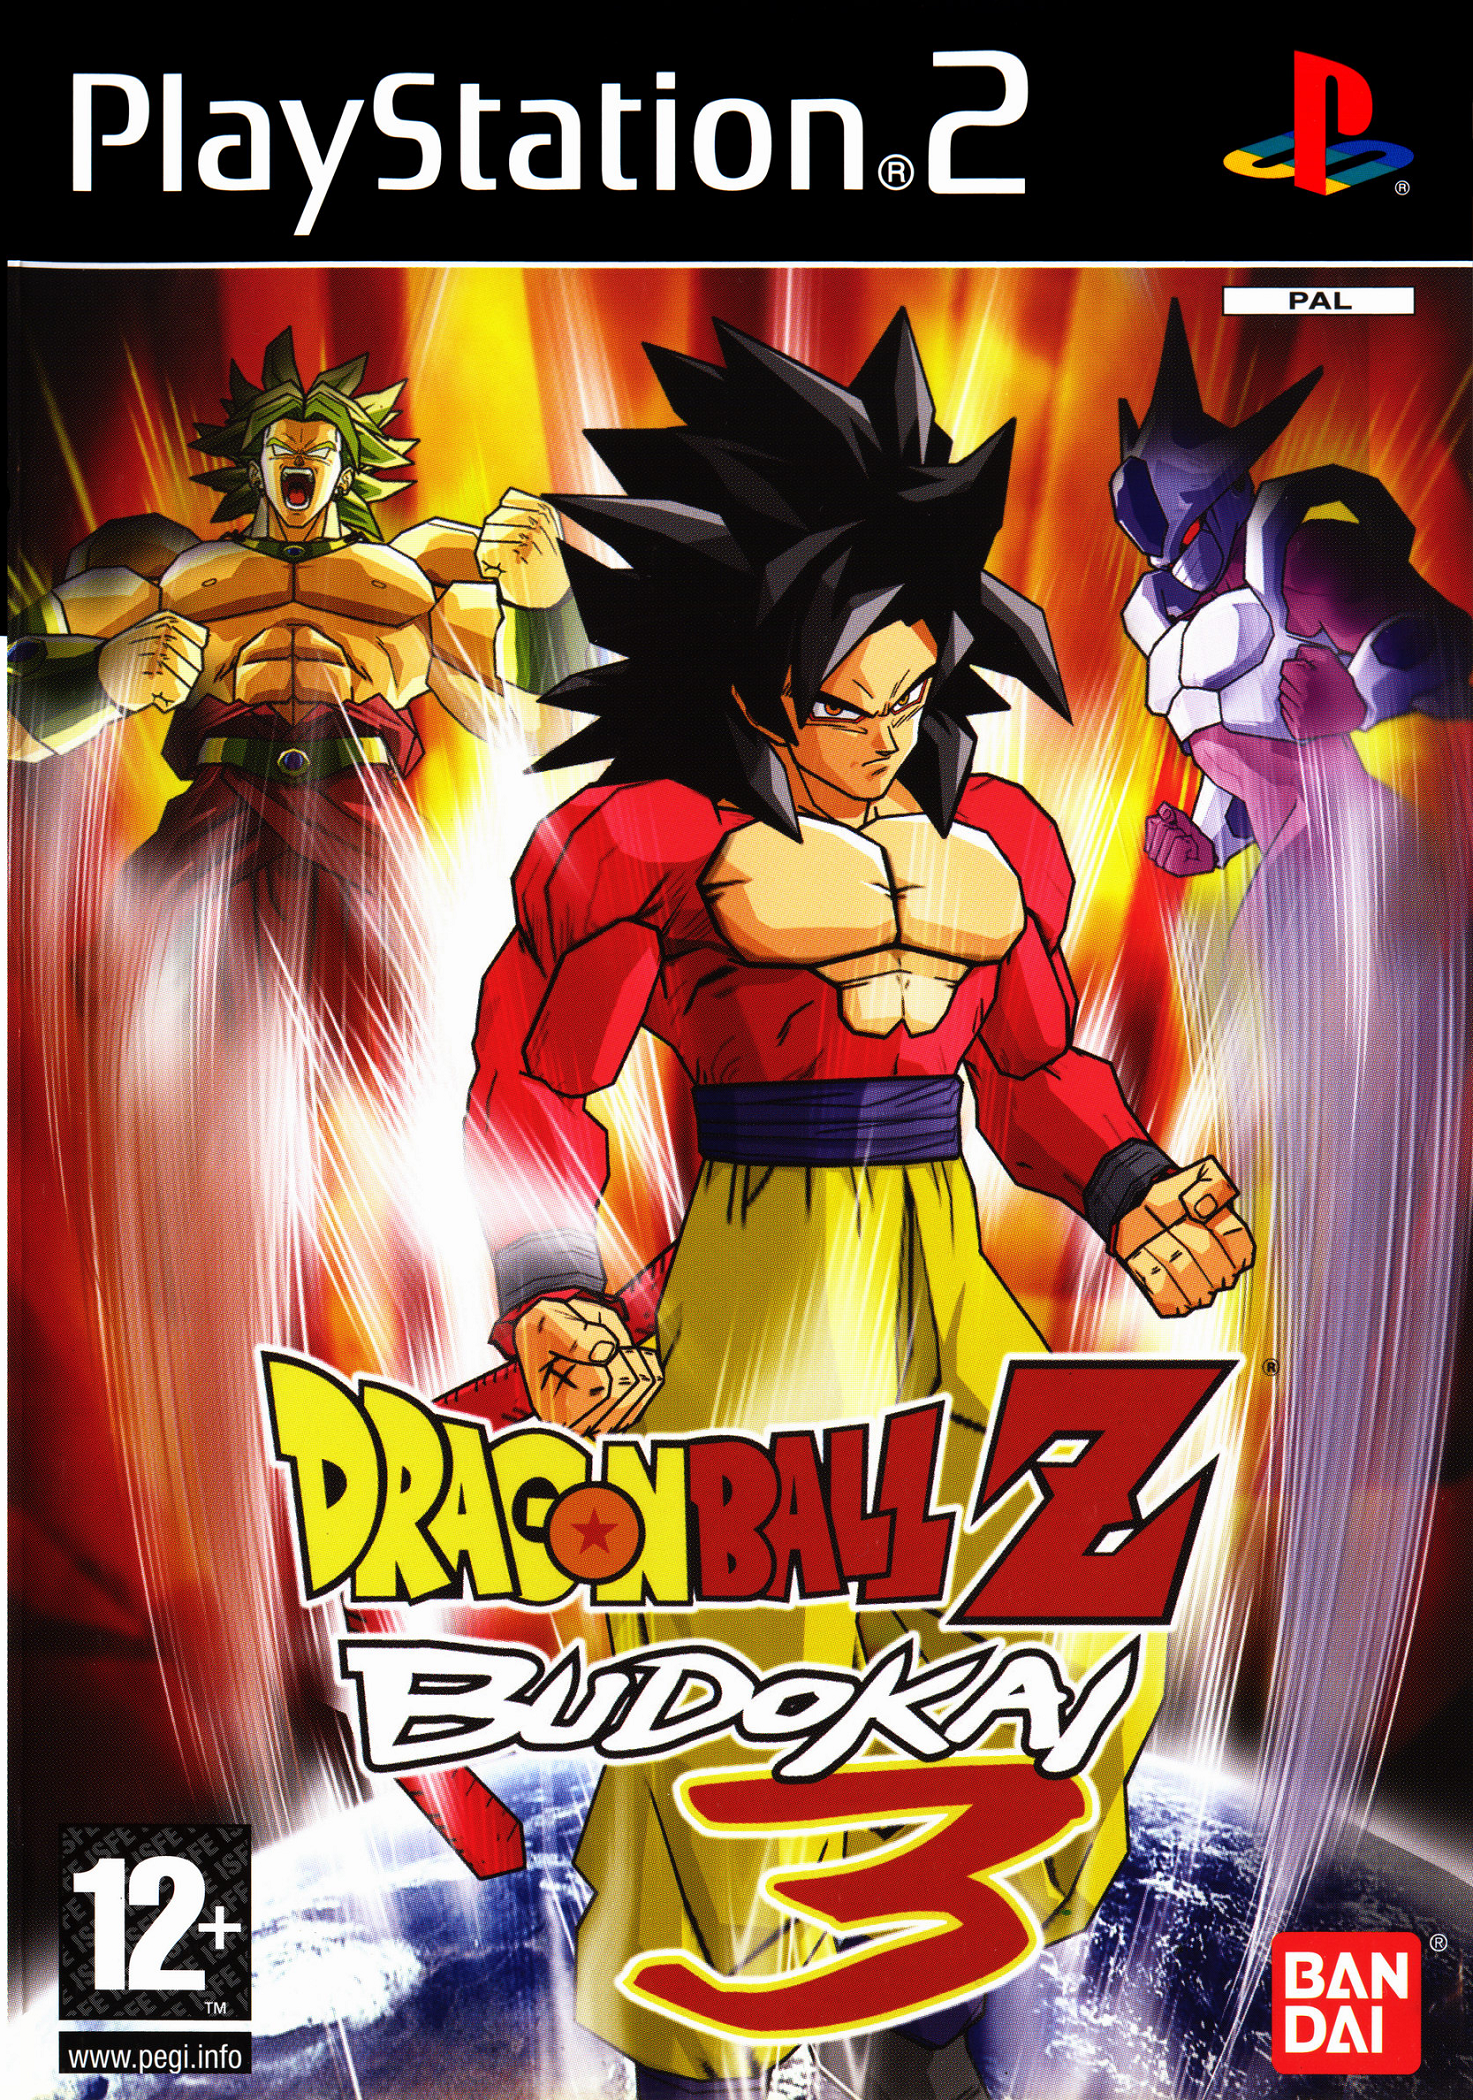 dragon-ball-z-budokai-3-videospiele-wiki-fandom-powered-by-wikia